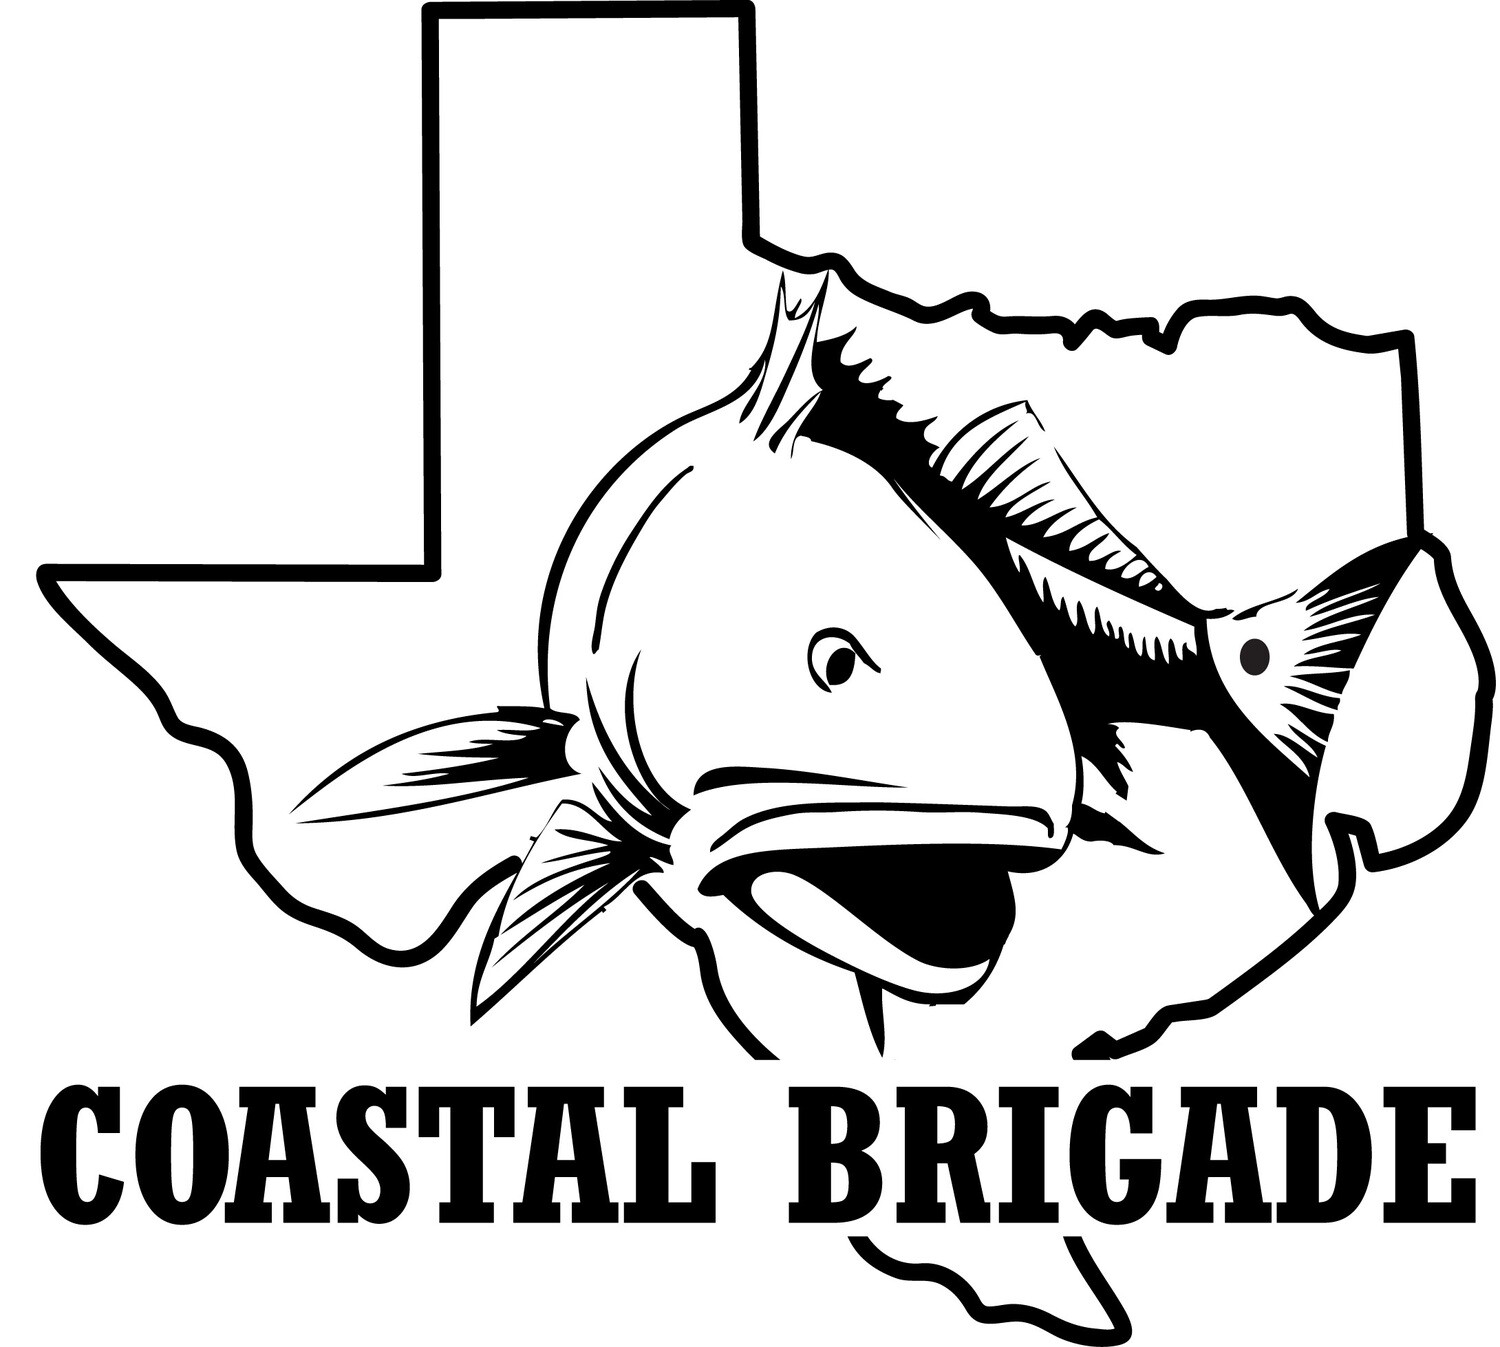 Couple's Ticket - Coastal Brigade Fundraiser